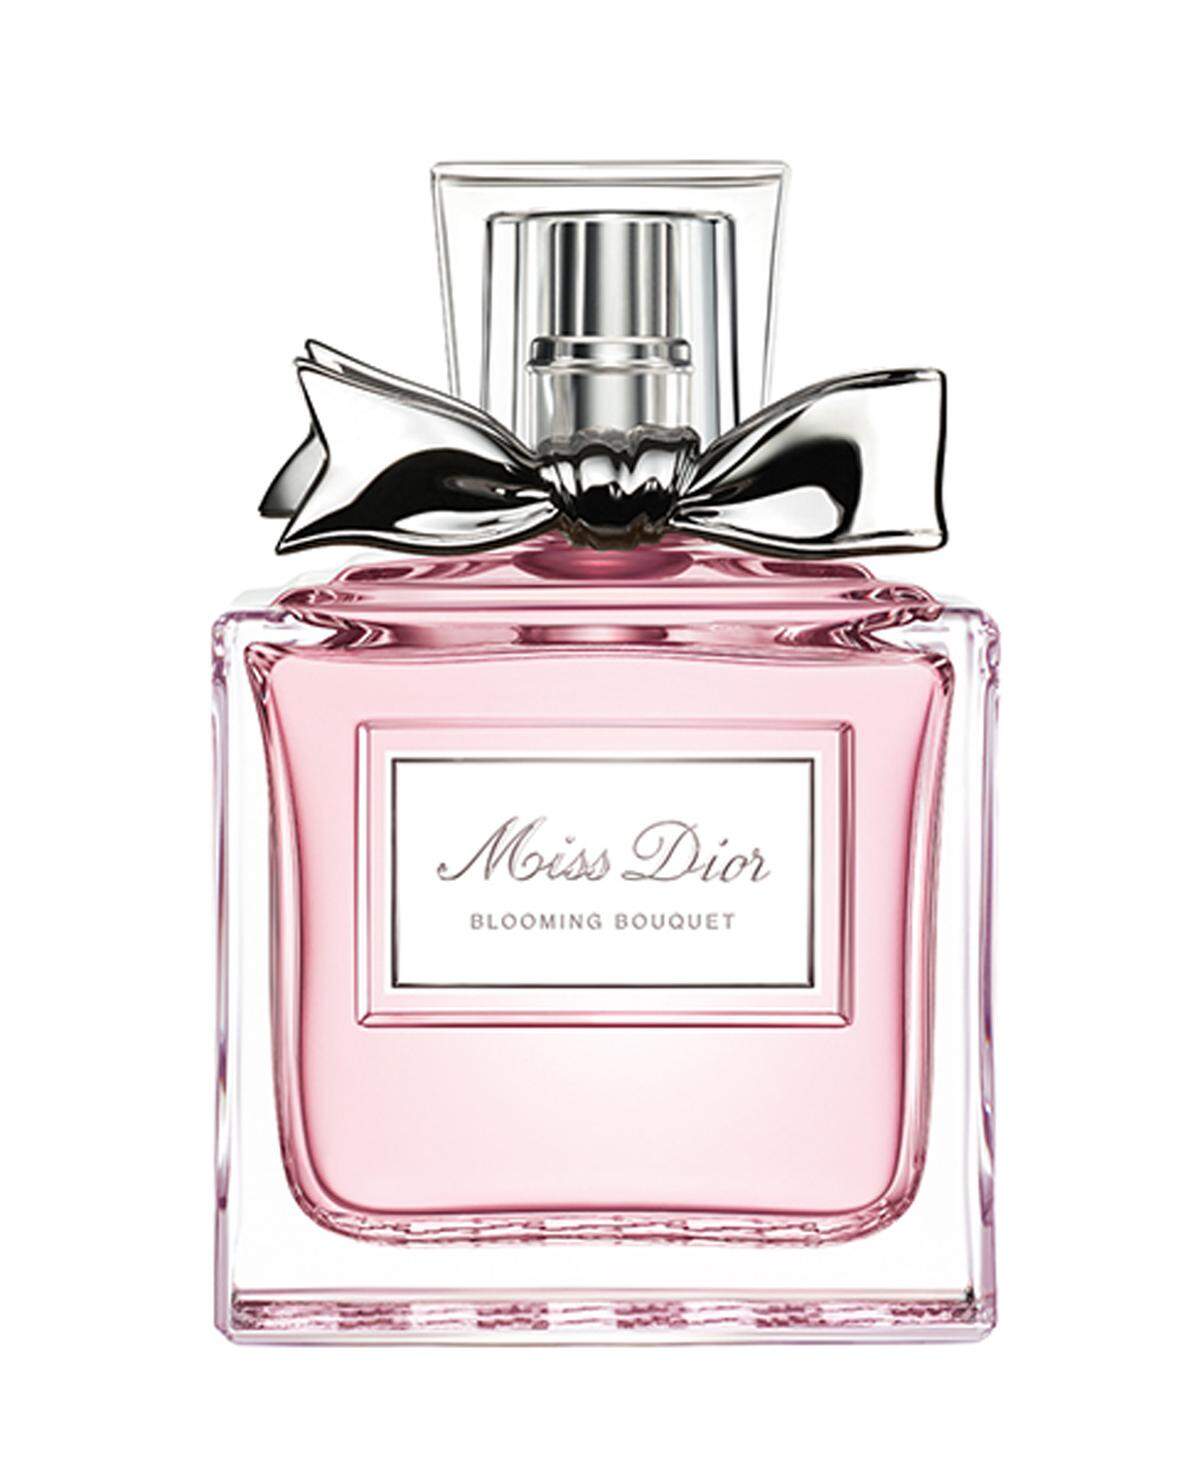 Parfums sind Geschenke-Klassiker, die nie alt werden. "Miss Dior", ab 73,95 Euro, im Fachhandel erhältlich.